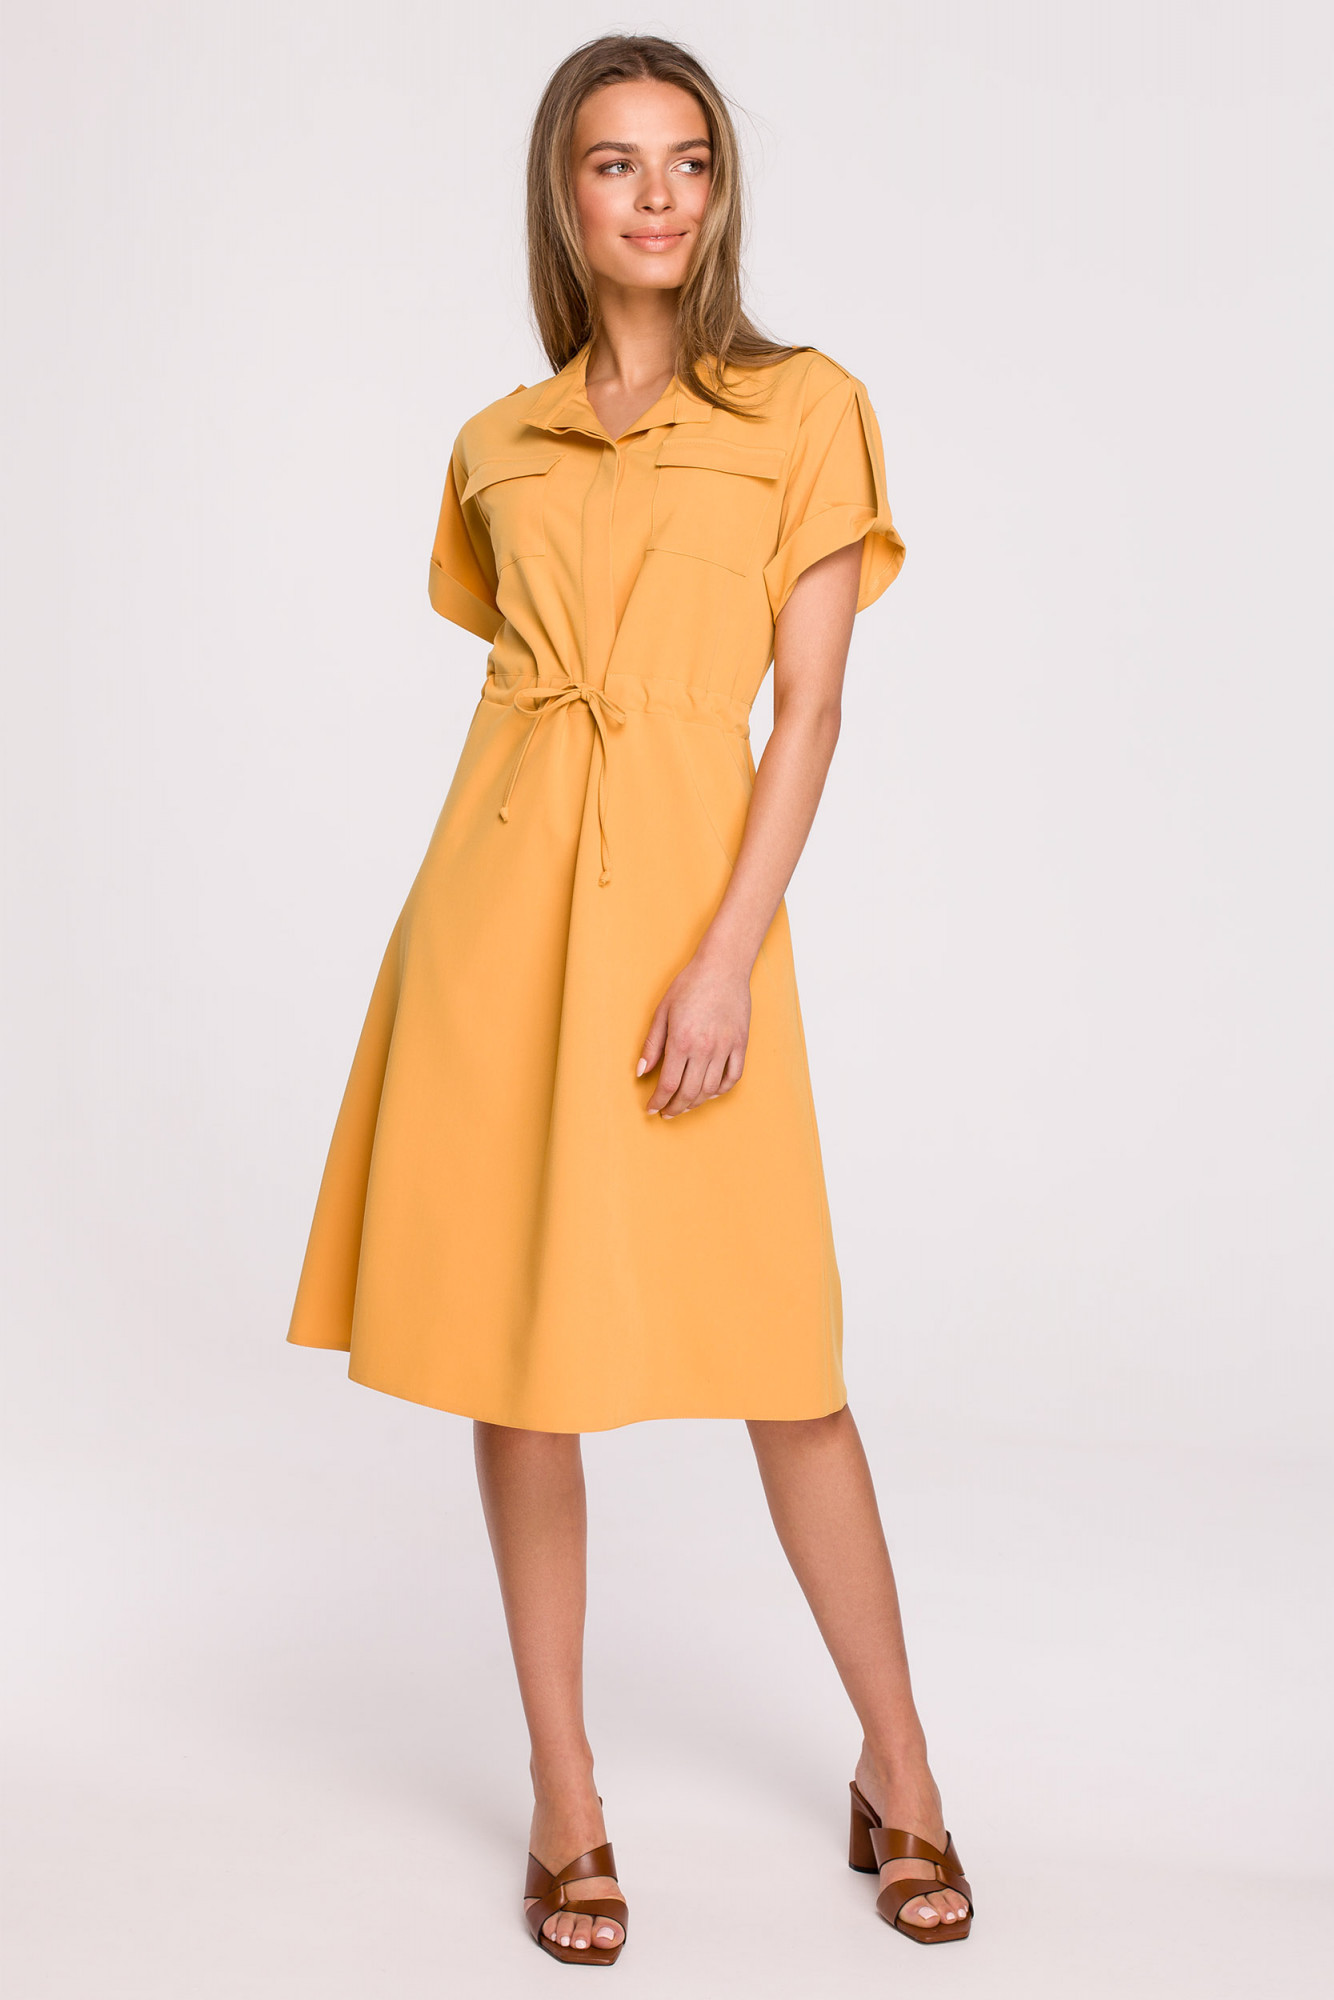 Dámské košilové šaty Yellow model 17603502 - STYLOVE Velikost: S, Barvy: Žlutá